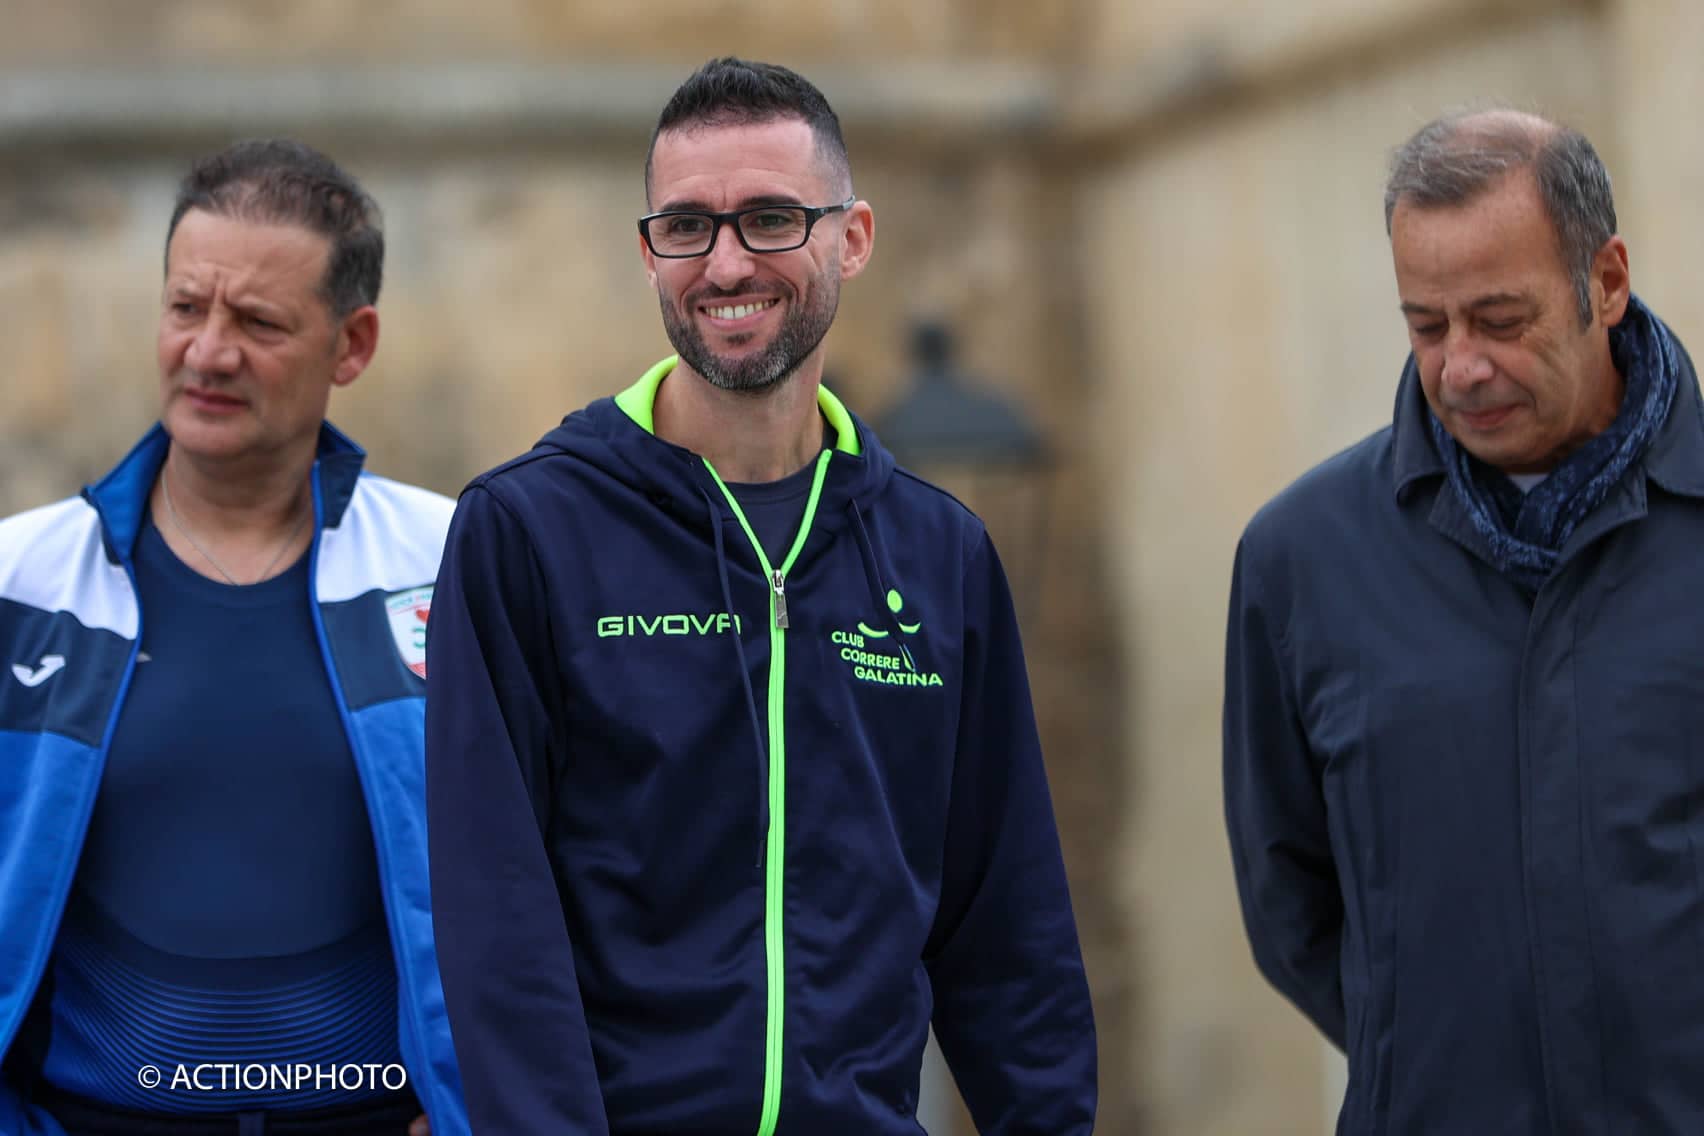 Mezza Maratona delle Tre Torri a Porto Cesareo: trionfa Tundo in 1h 15′ 27”